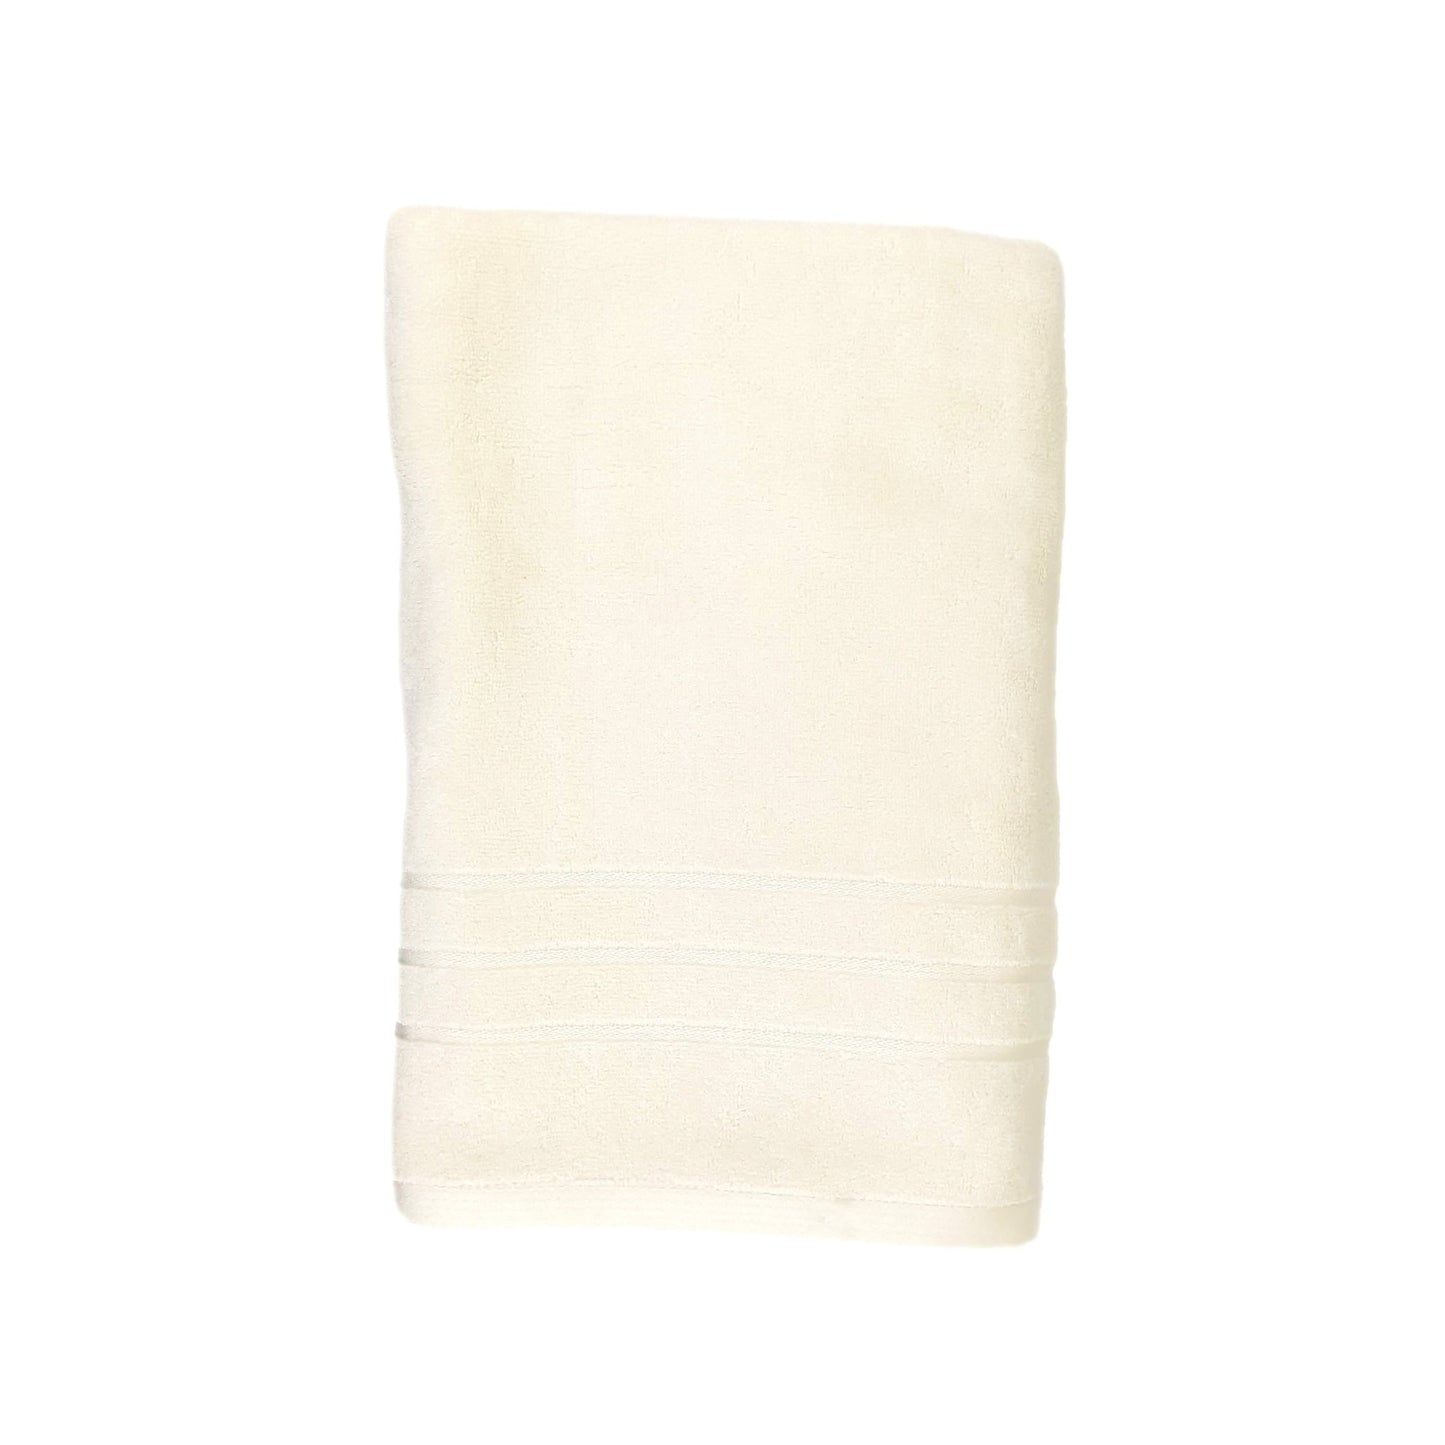 Premium Bamboo Towel (70cm x 140cm) - Adult